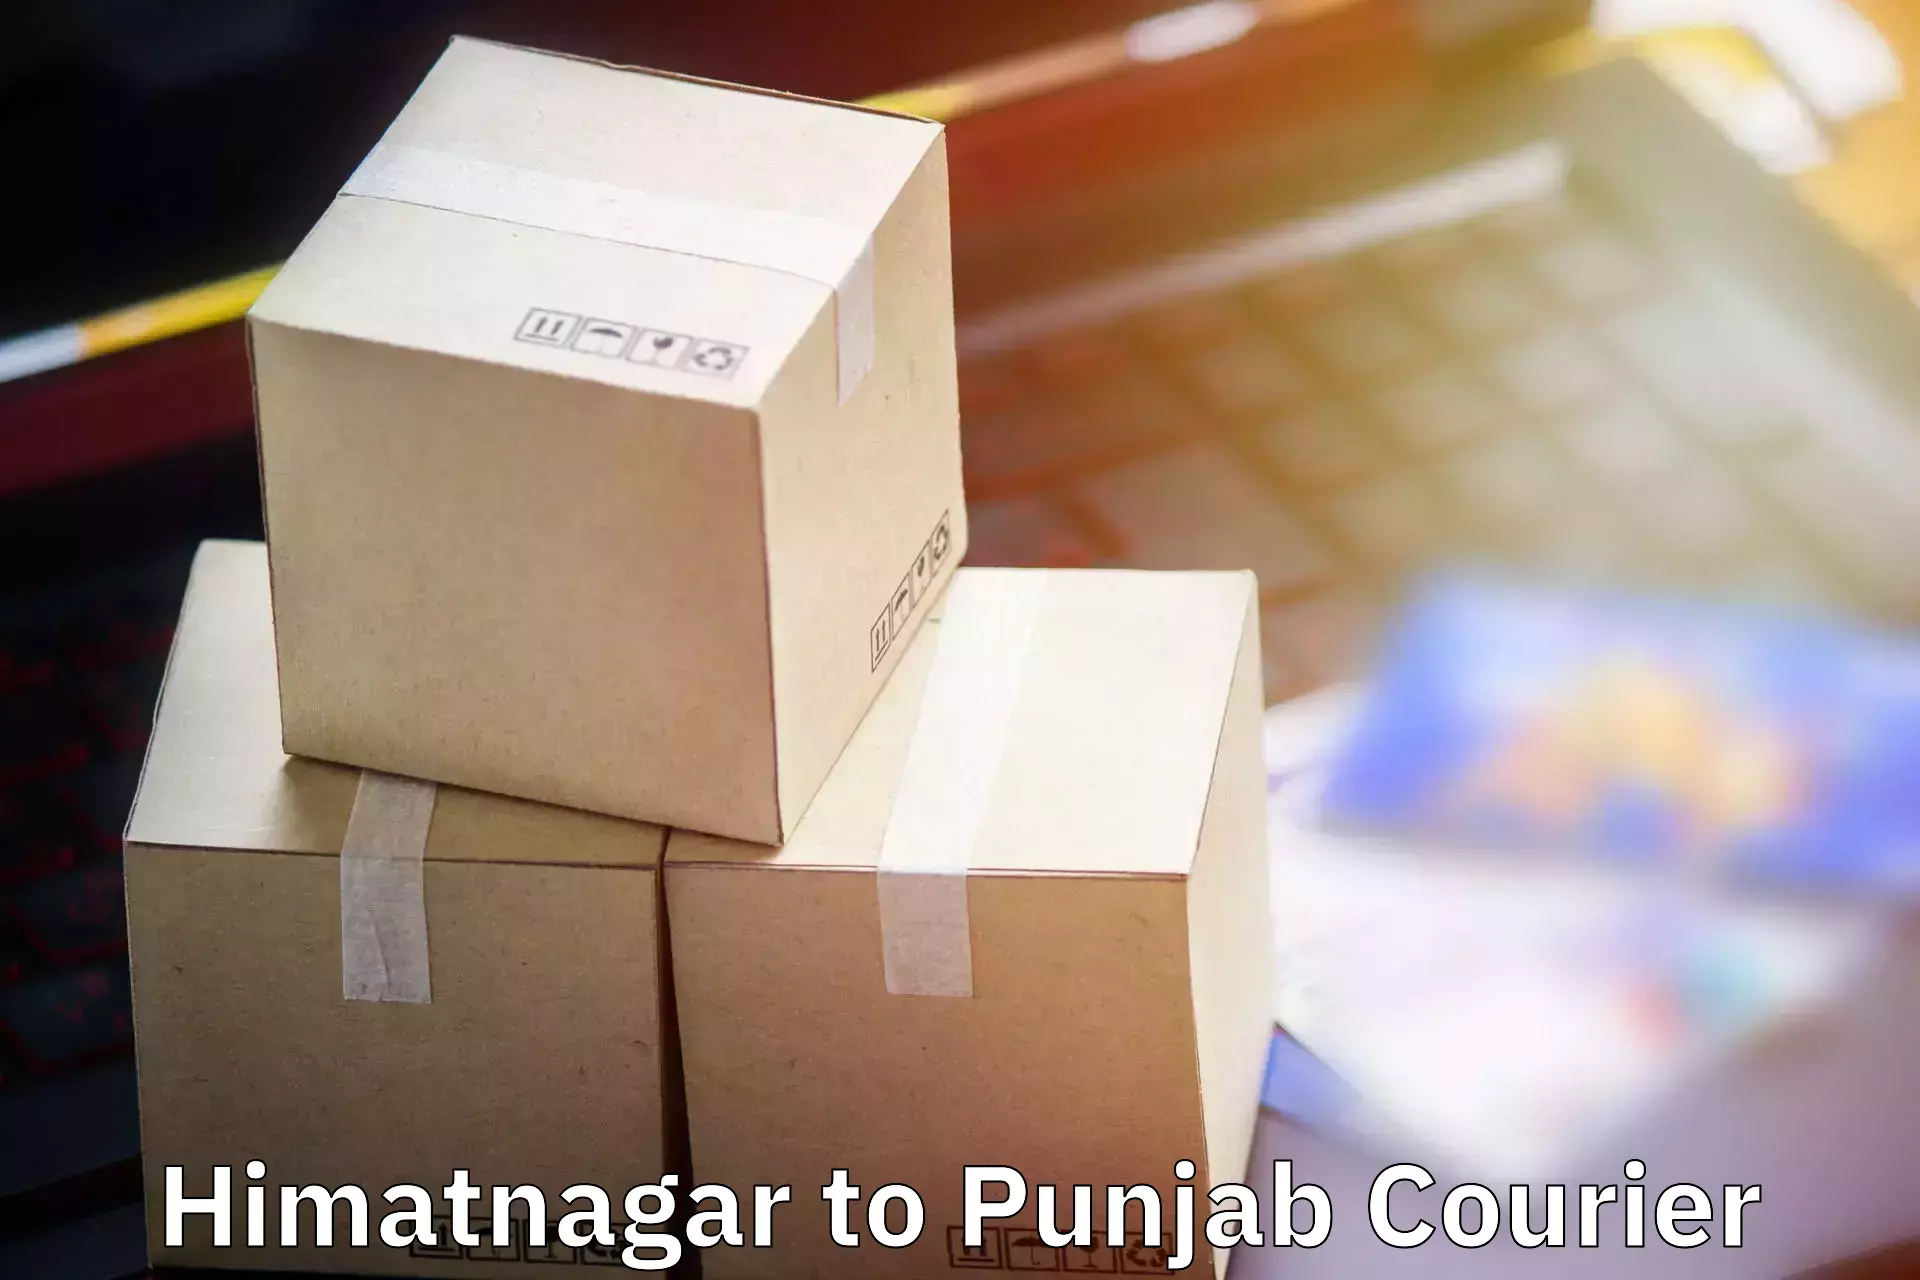 Baggage shipping service Himatnagar to Phillaur